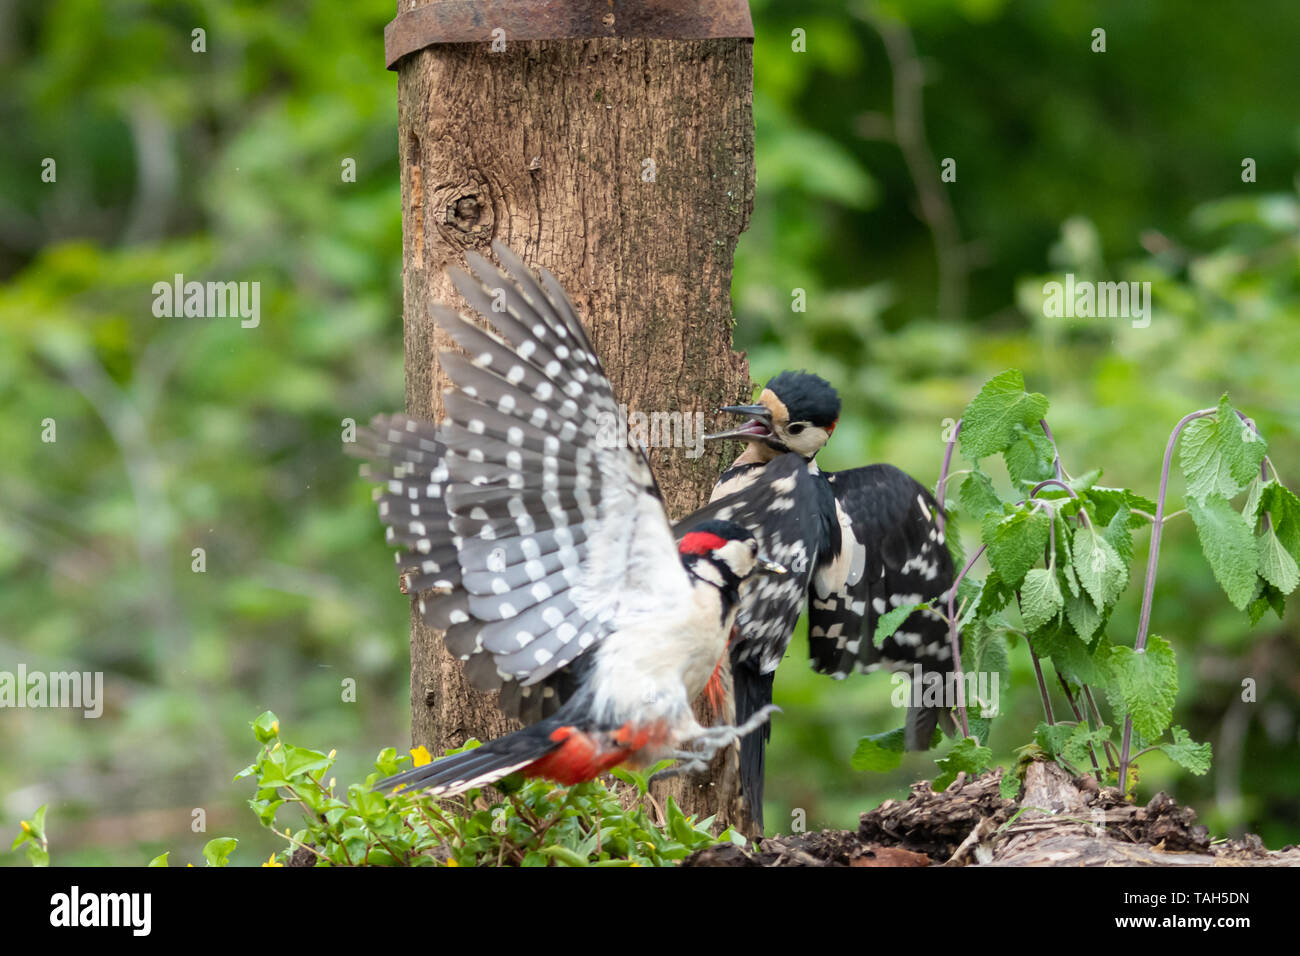 Zwei männliche Große beschmutzt Spechte (Dendrocopos major) kämpfen, UK. Vogel Verhalten, Aggression. Stockfoto